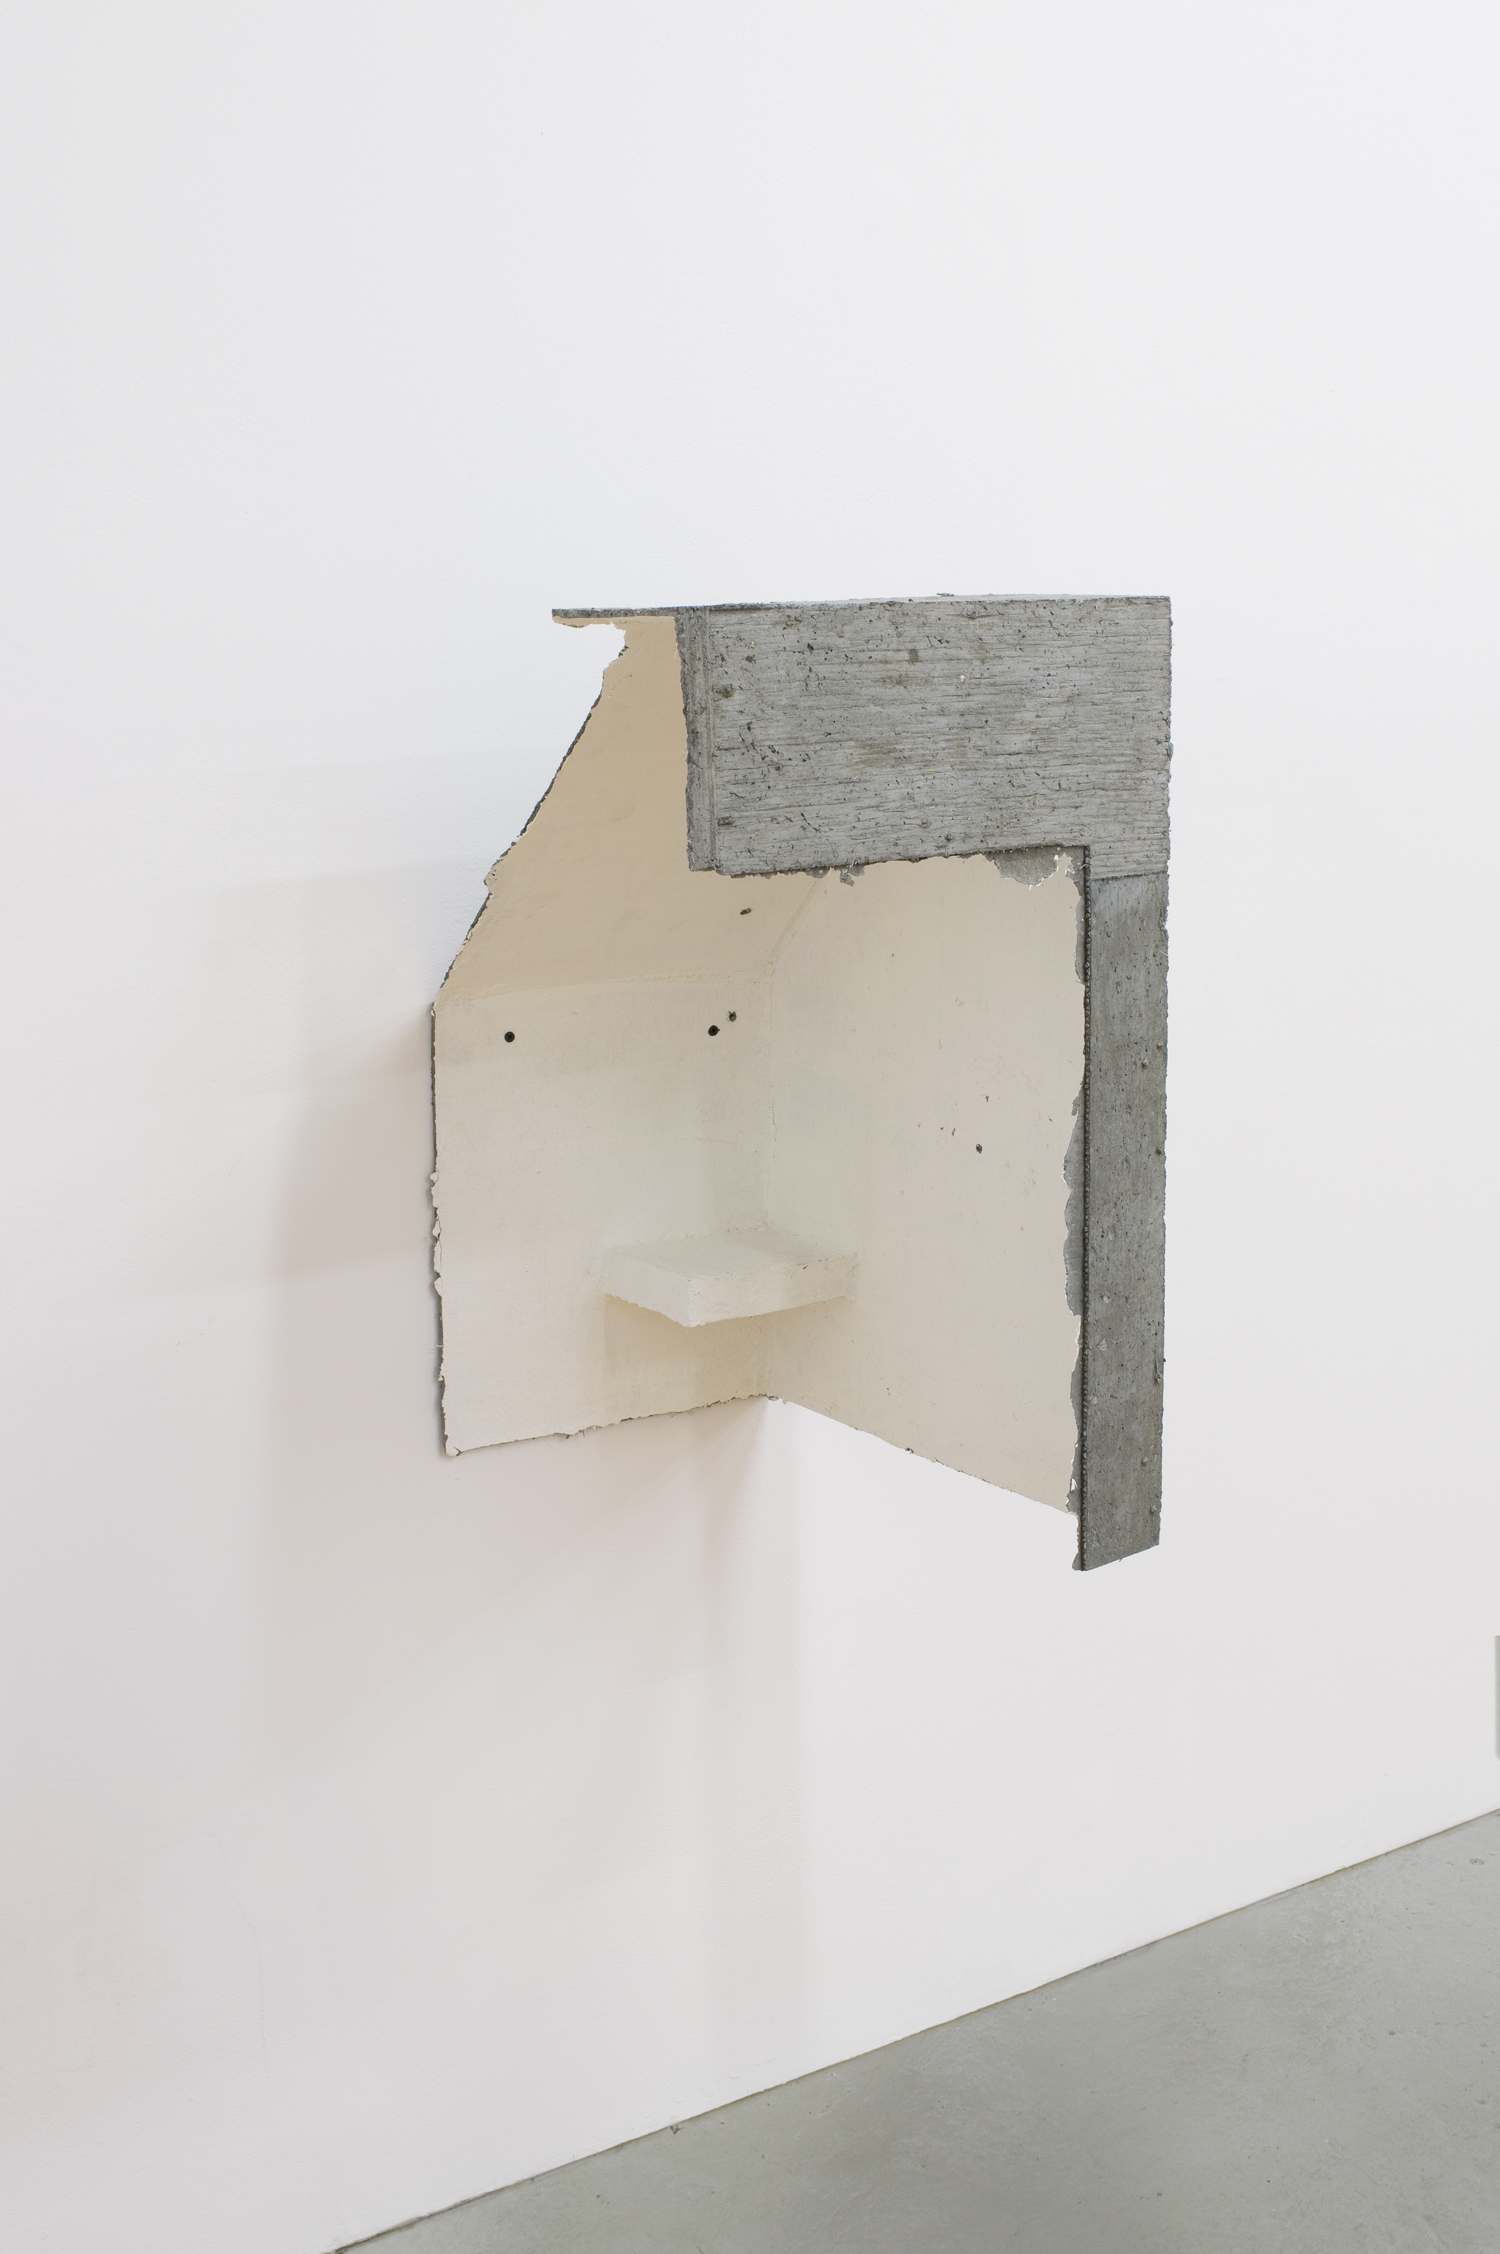   Limik , 2017, papier maché, concrete, and gesso, 26 x 18 x 15 in 